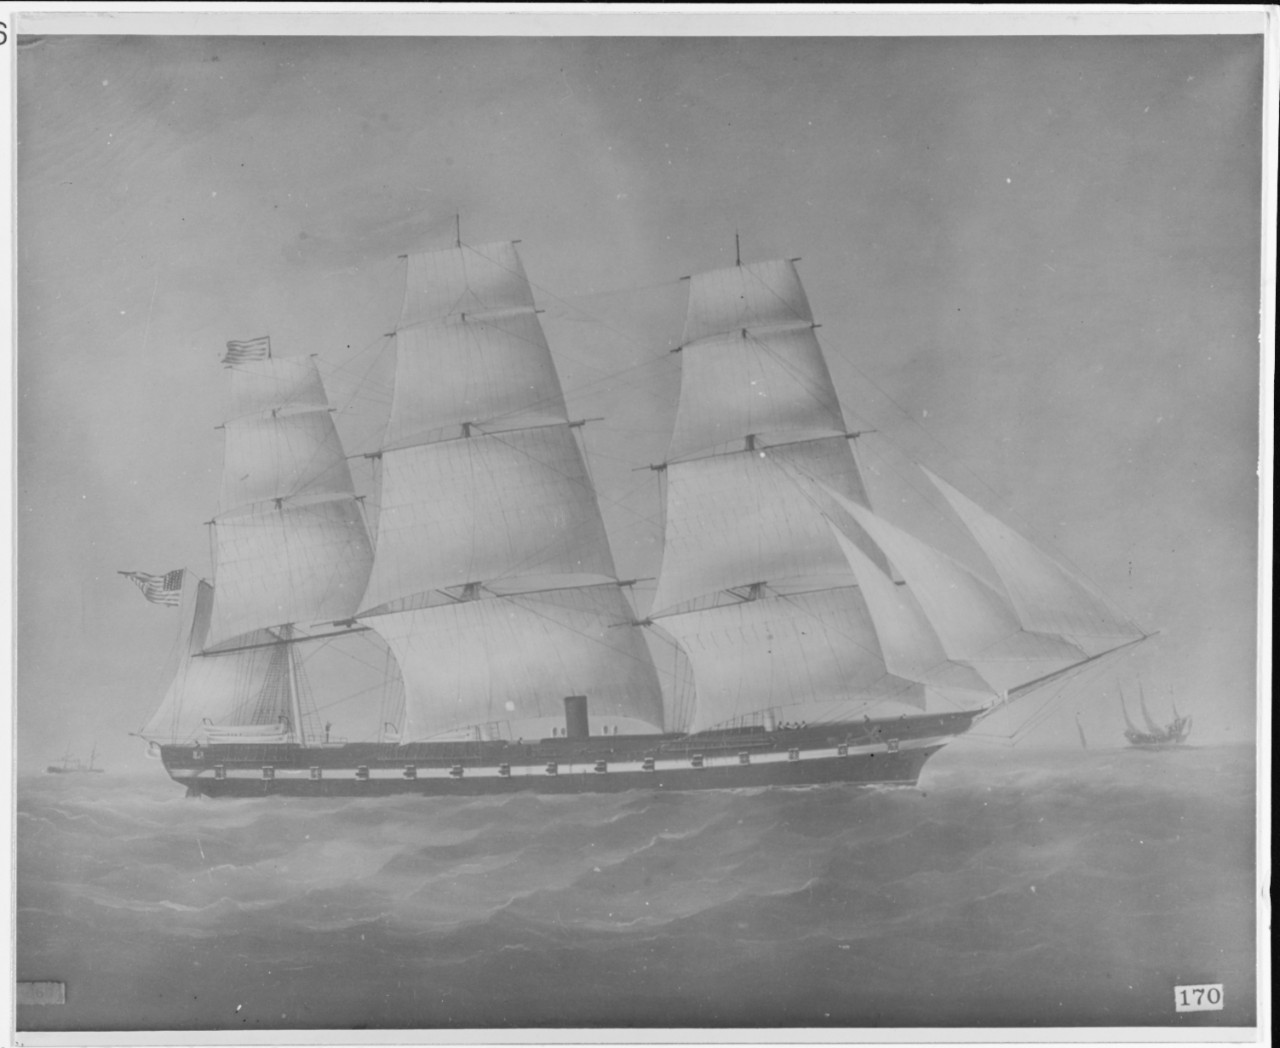 Unidentified U.S. Steam frigate, circa 1860